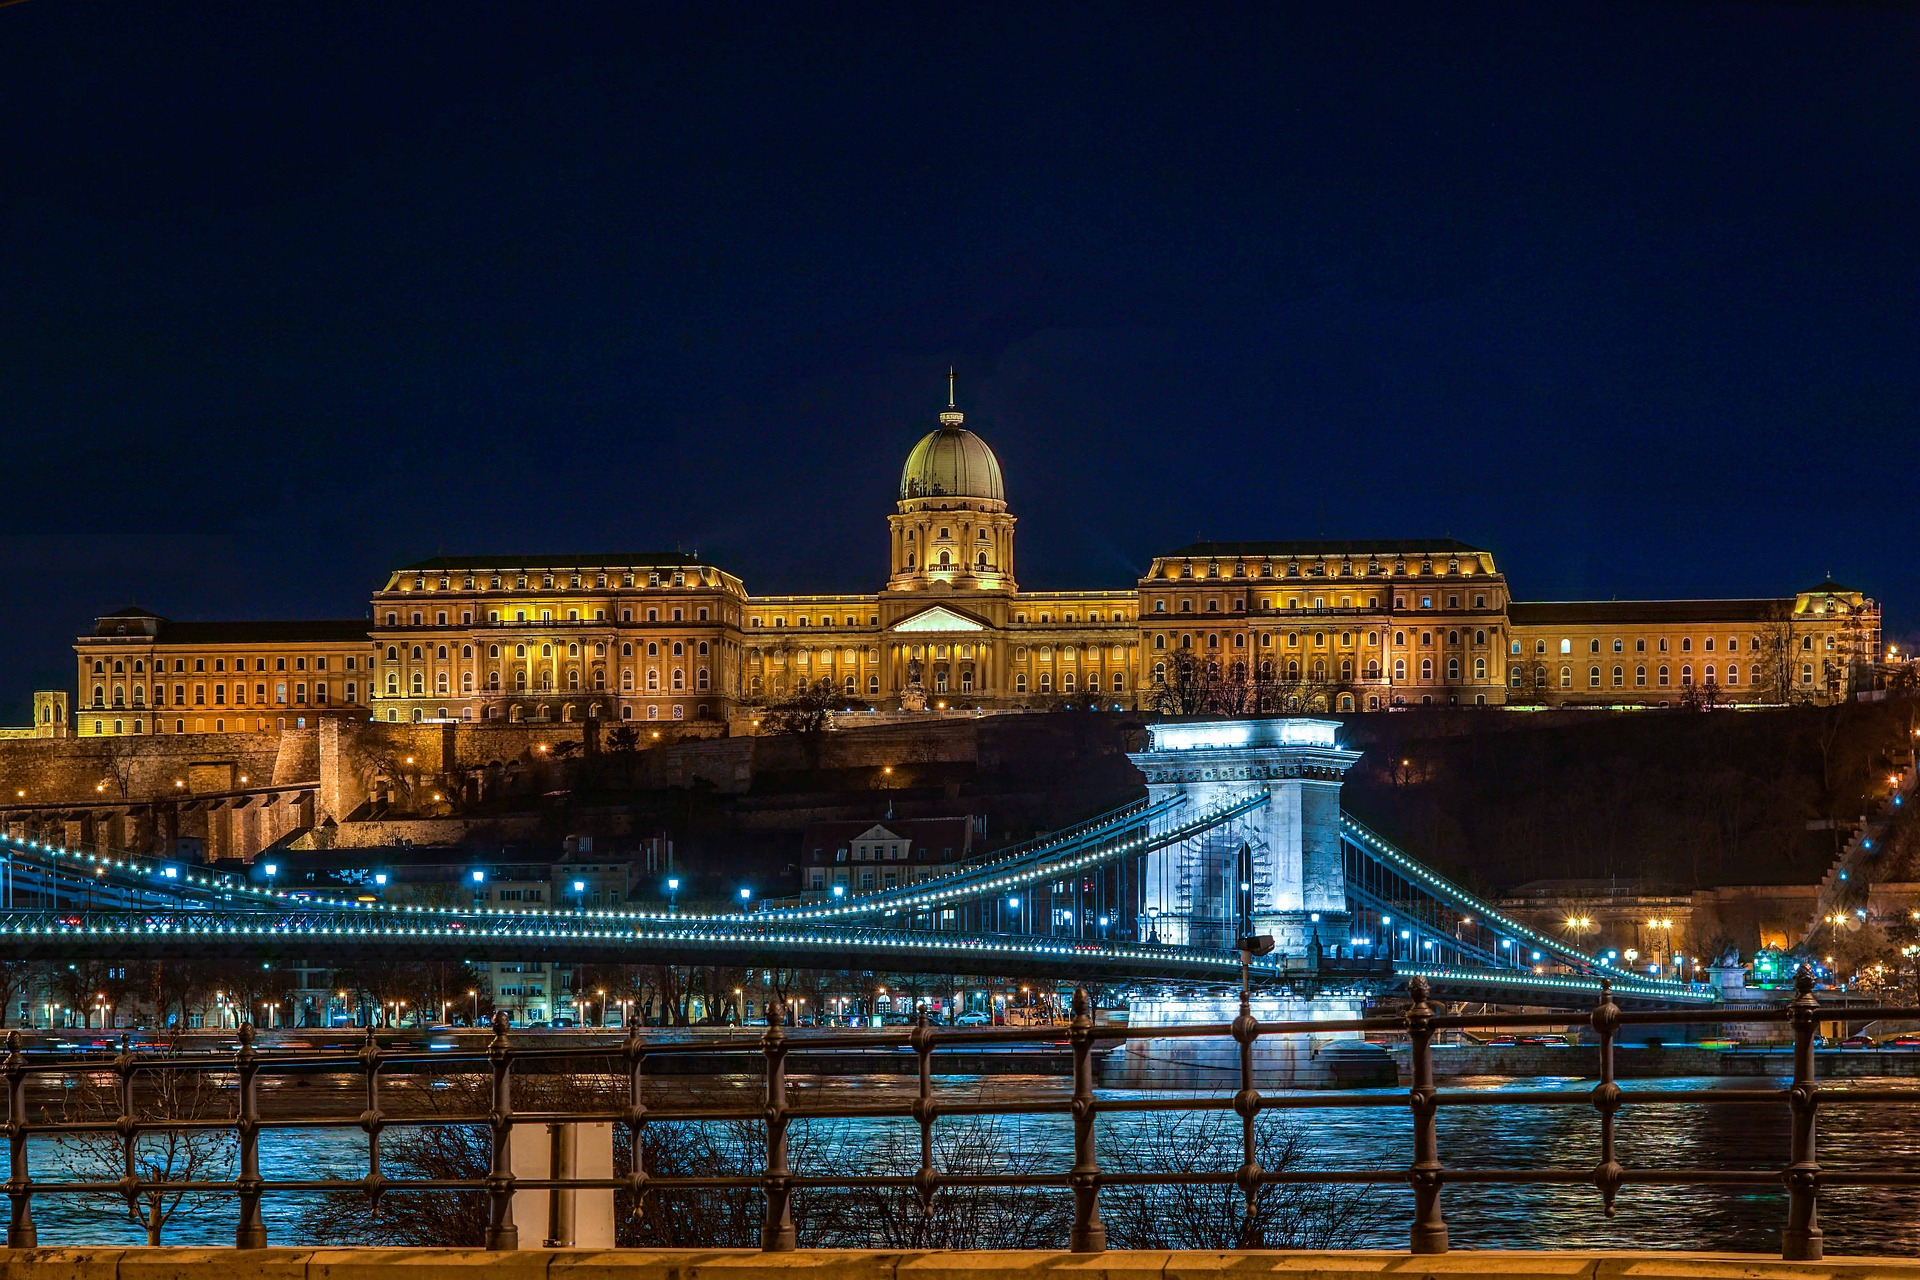 the beautifully illuminated Buda Royal Castle Night Image